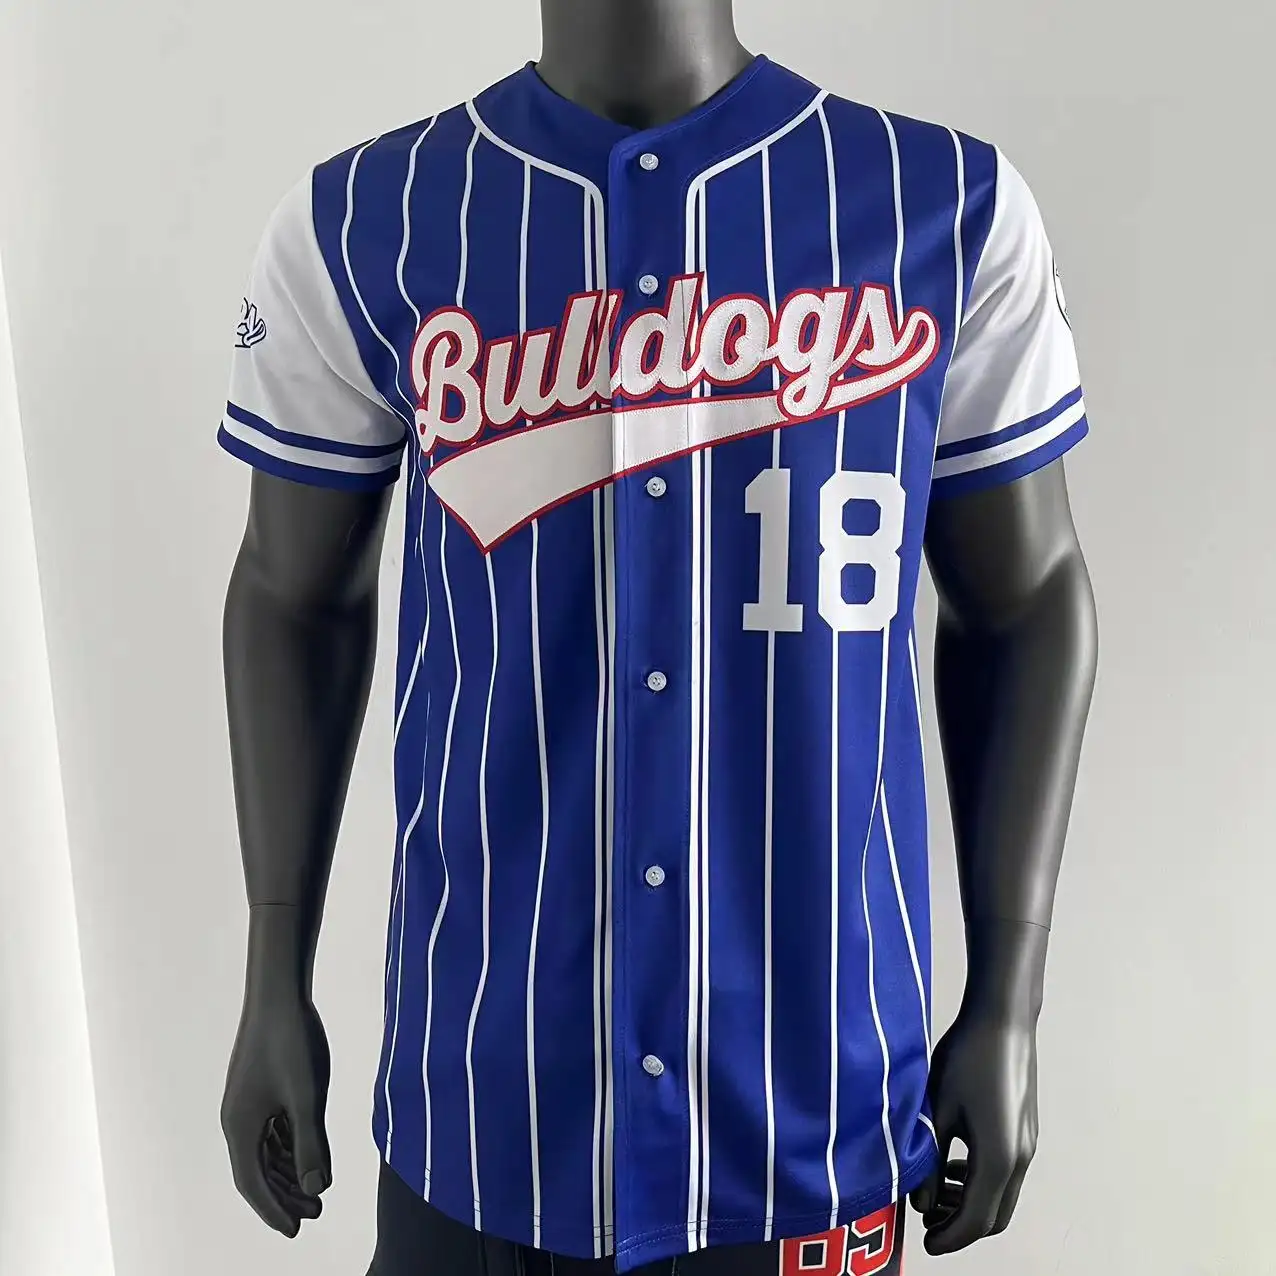 최고 품질의 소프트볼 셔츠 맞춤형 로고 및 번호 팀웨어 승화 야구 유니폼 도매 야구 유니폼